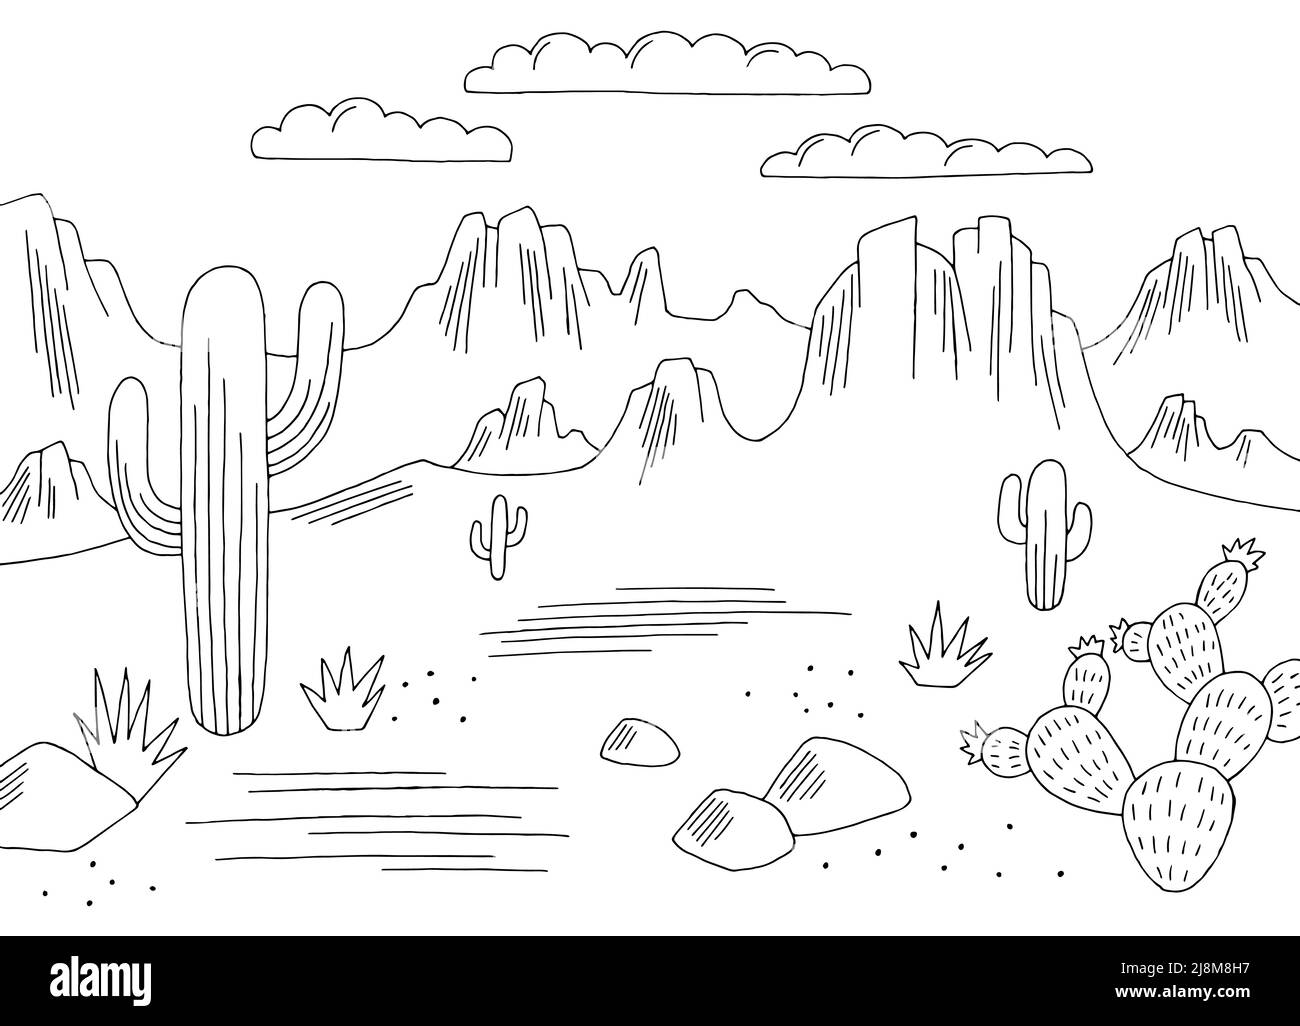 Schönheit Einfachheit Grafik schwarz weiß Wüste Landschaft Skizze Illustration Vektor Stock Vektor